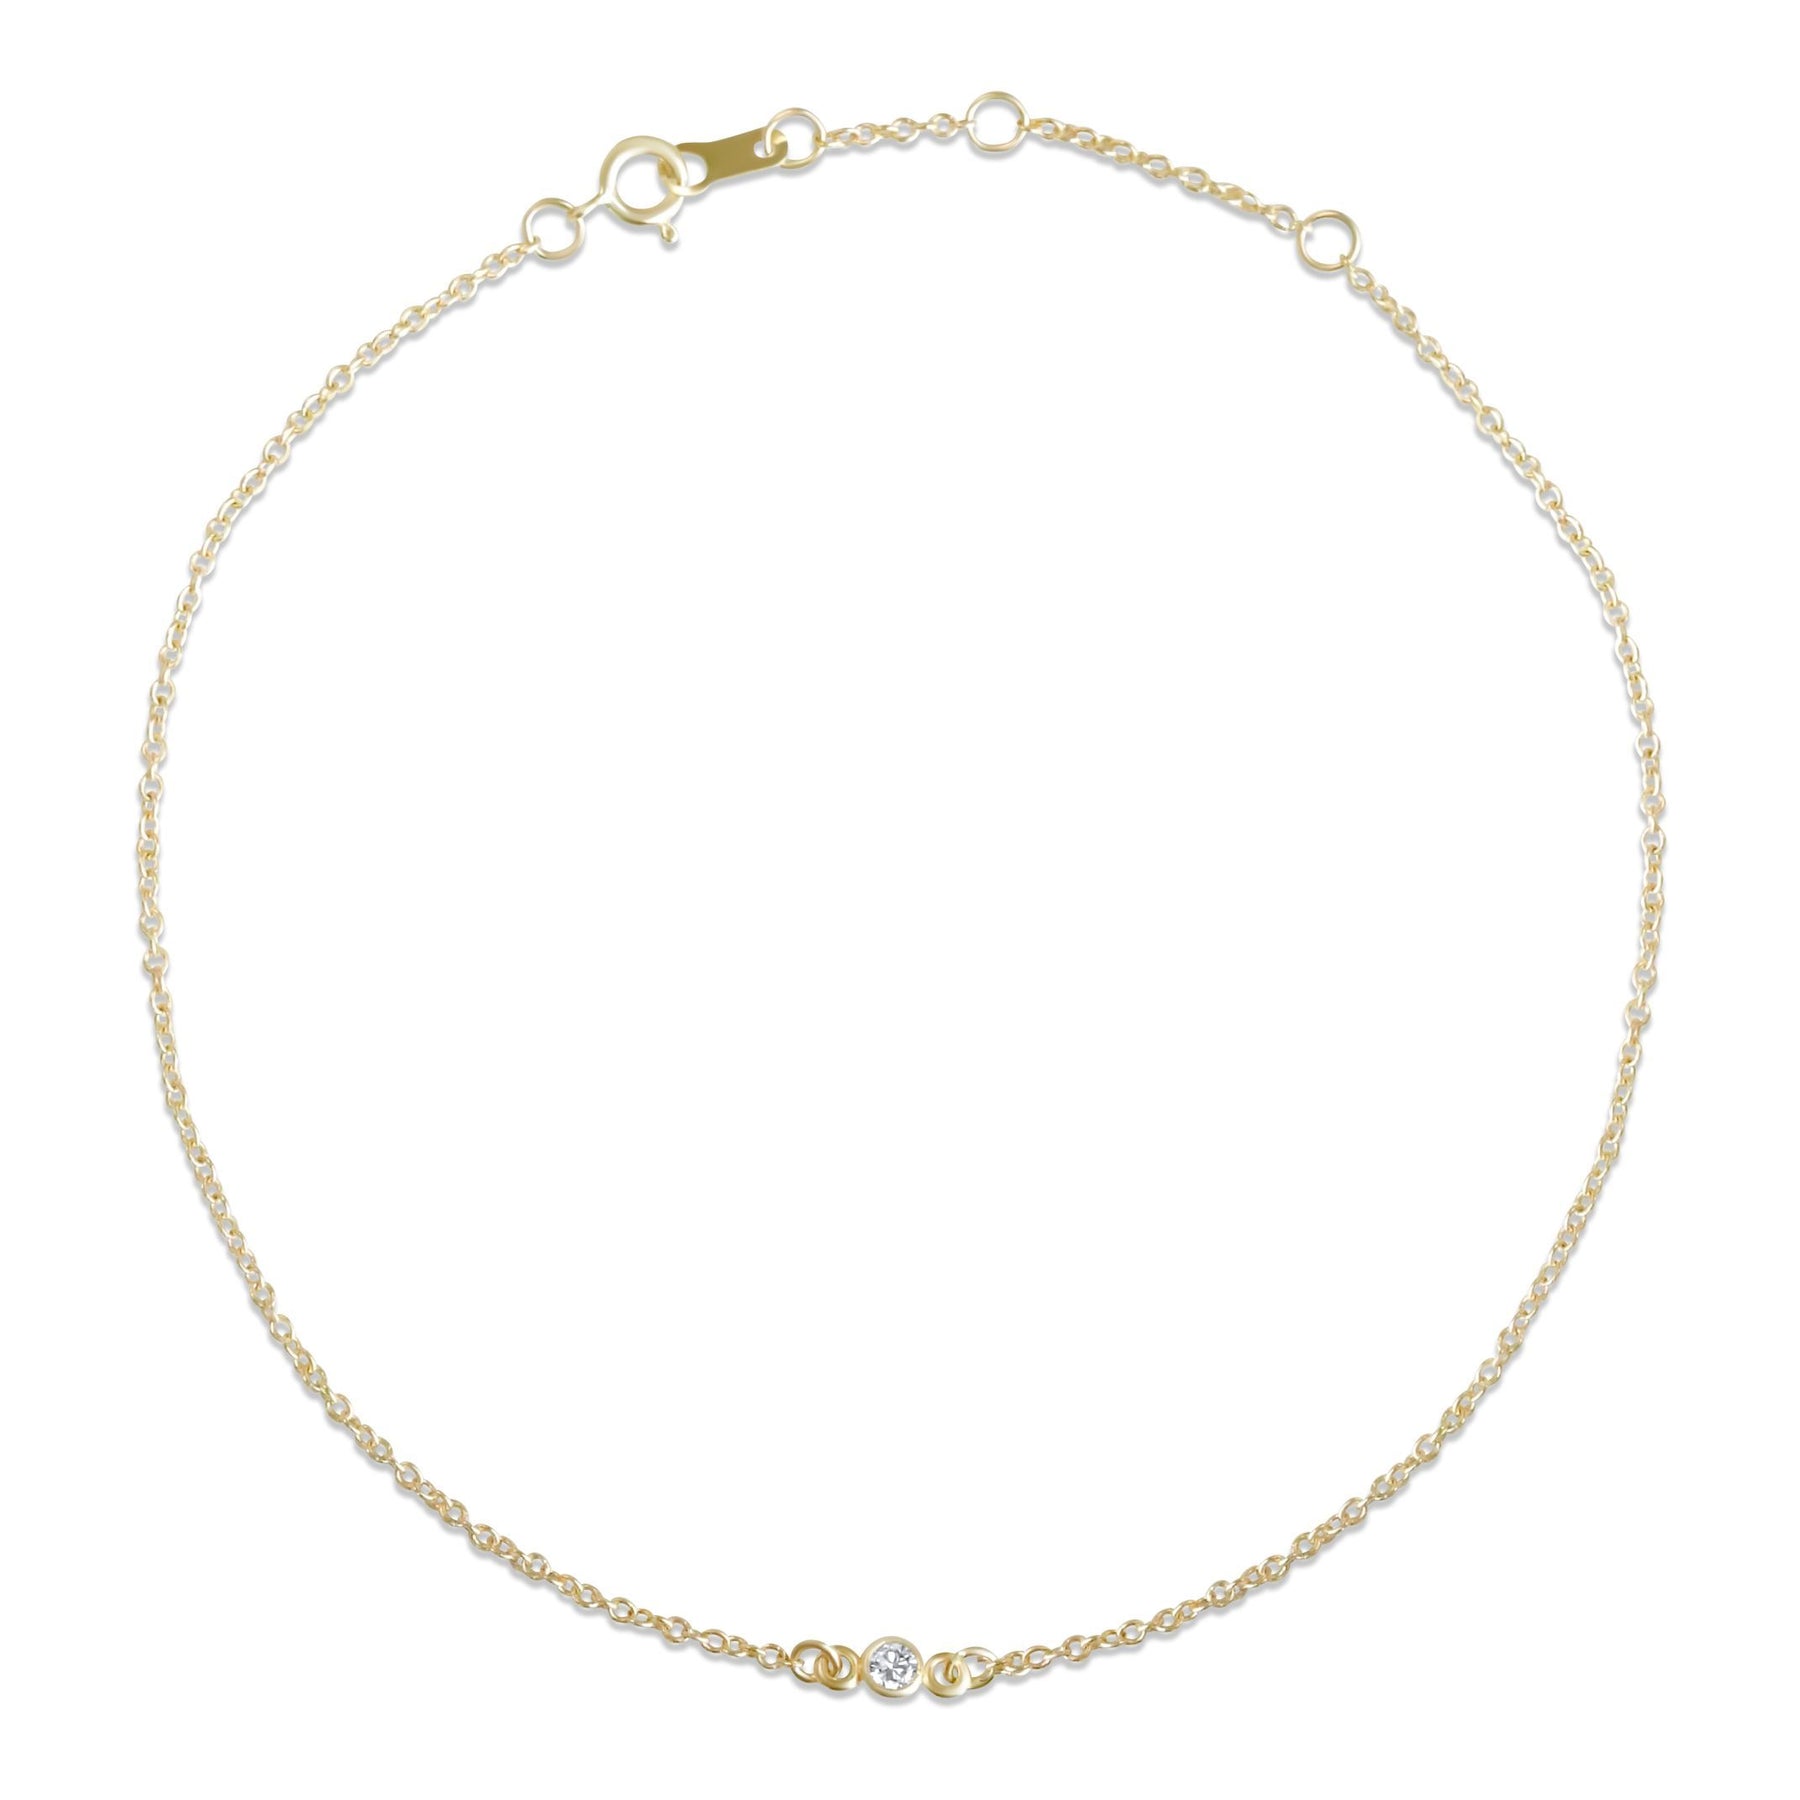 14k yellow, white or rose gold bezel set diamond bracelet